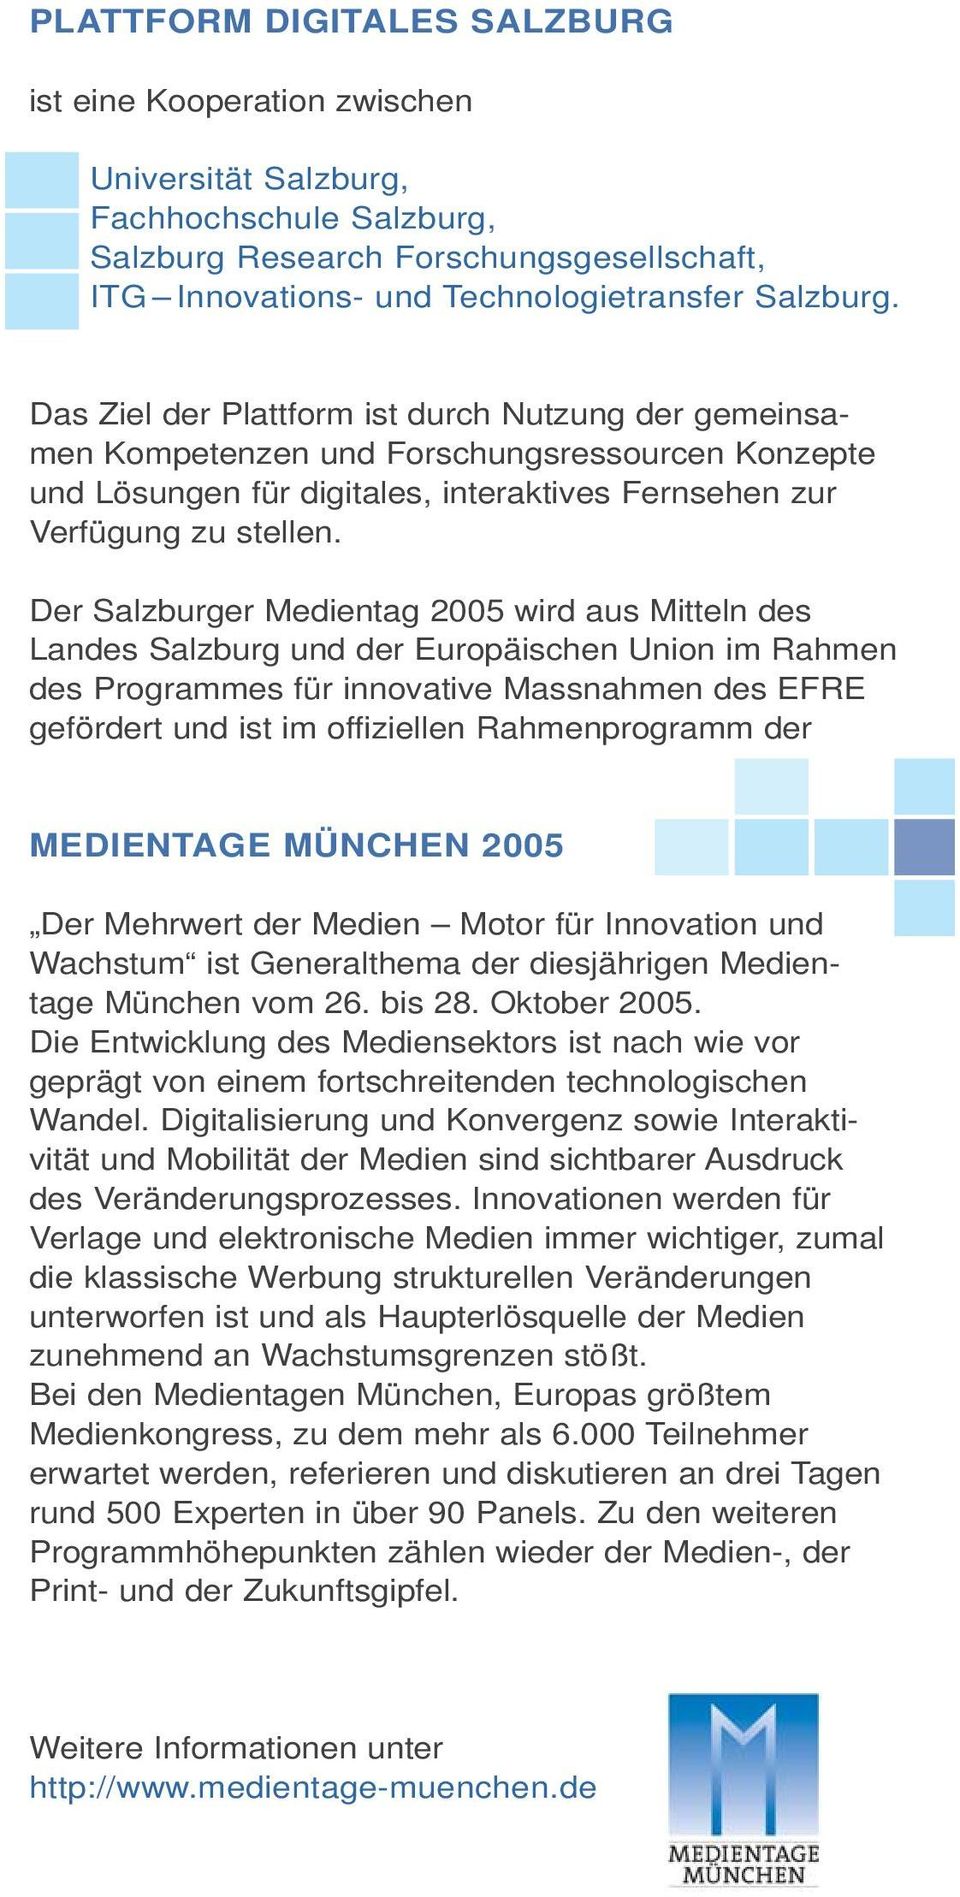 Der Salzburger Medientag 2005 wird aus Mitteln des Landes Salzburg und der Europäischen Union im Rahmen des Programmes für innovative Massnahmen des EFRE gefördert und ist im offiziellen